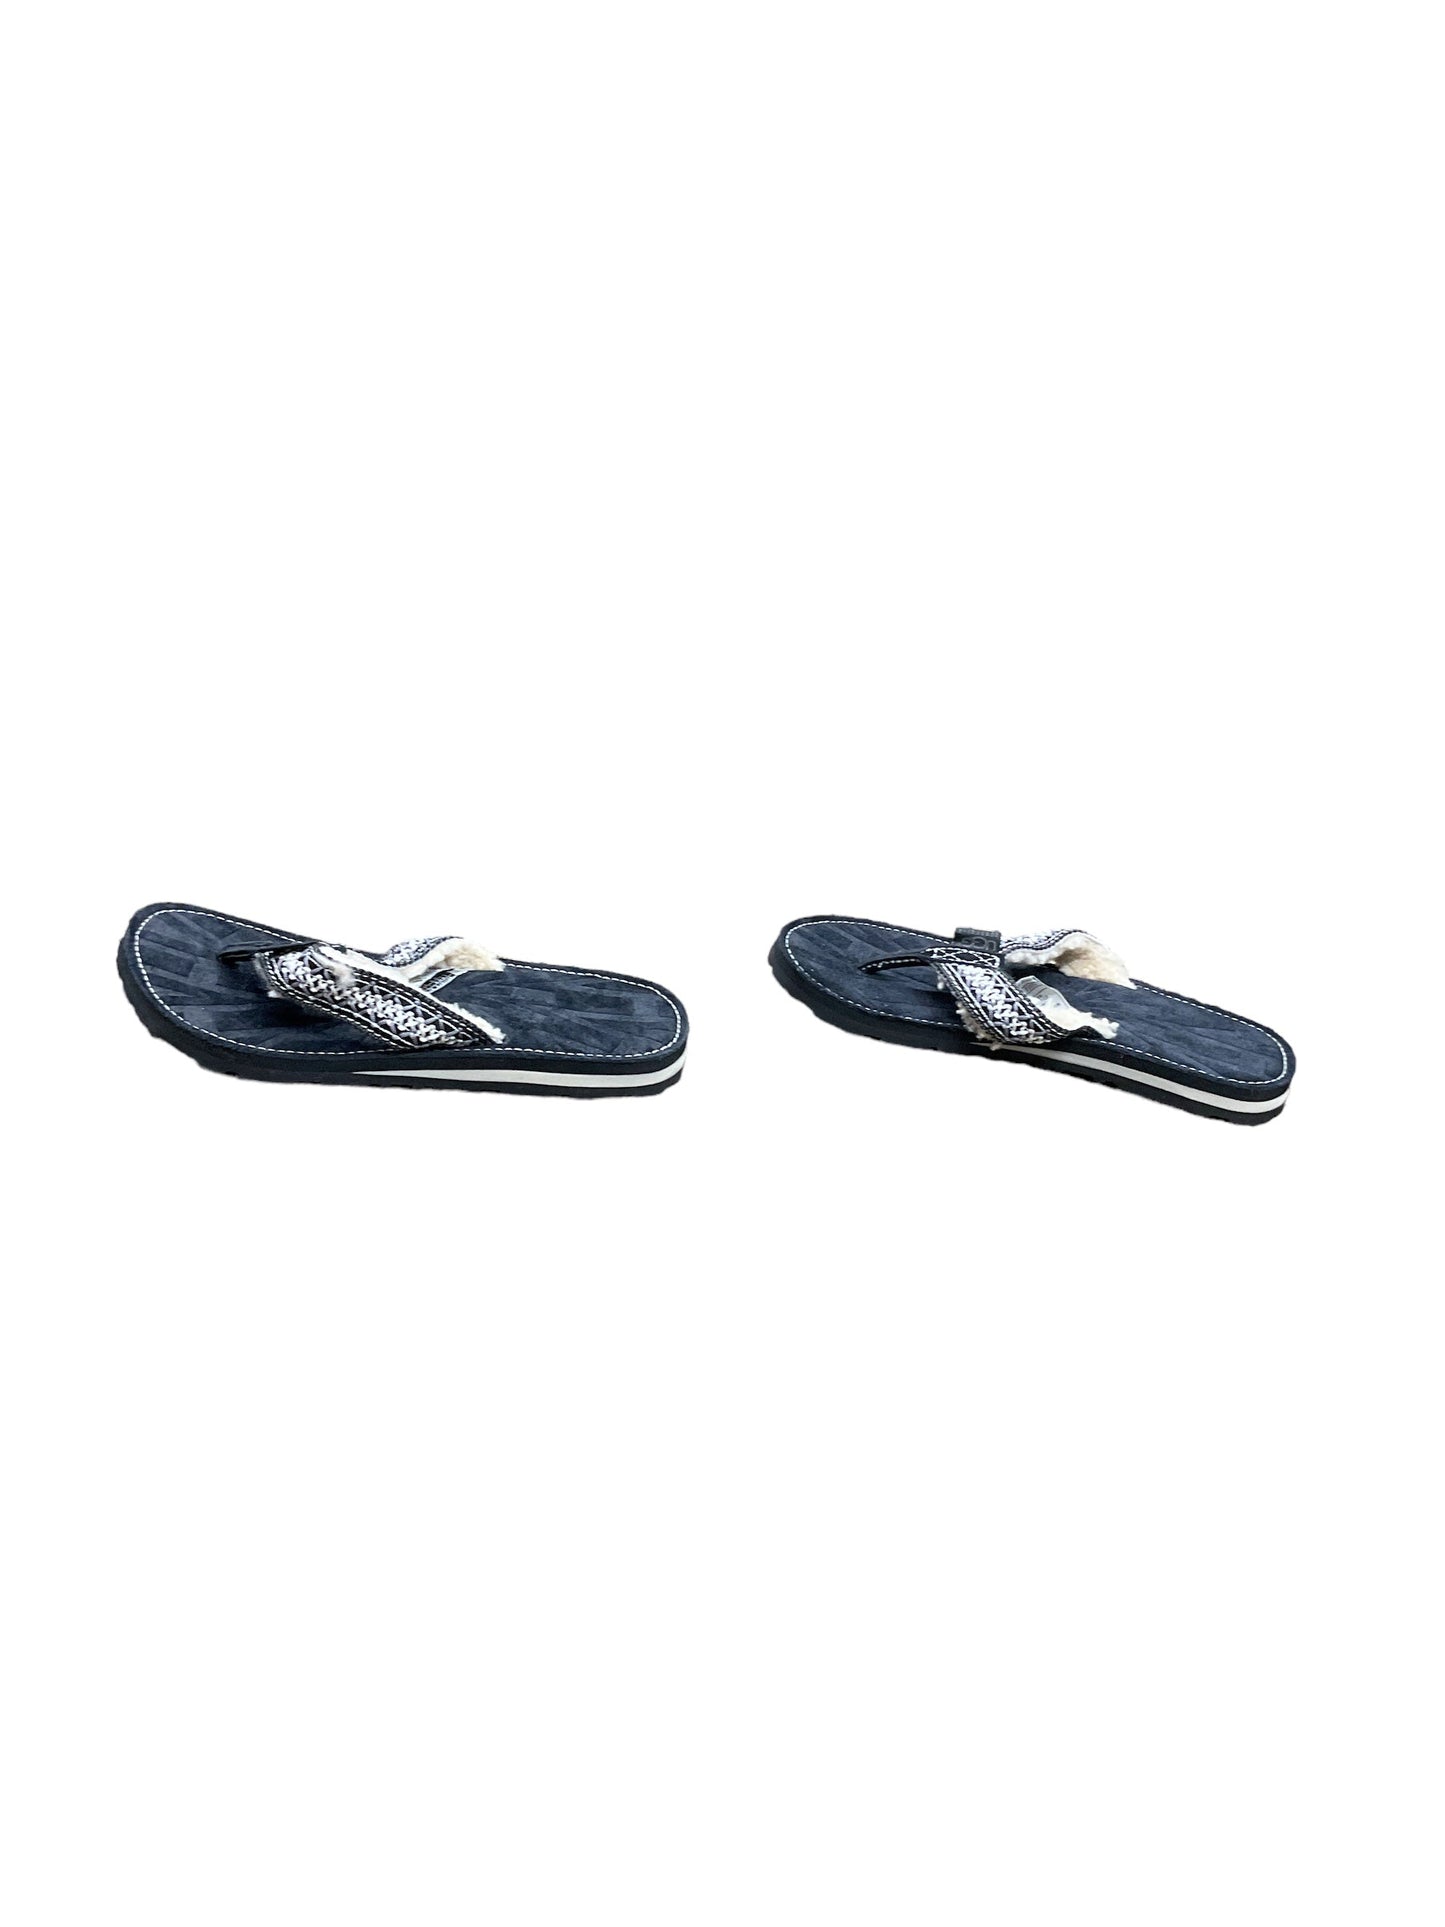 Sandals Flip Flops By Ugg  Size: 6